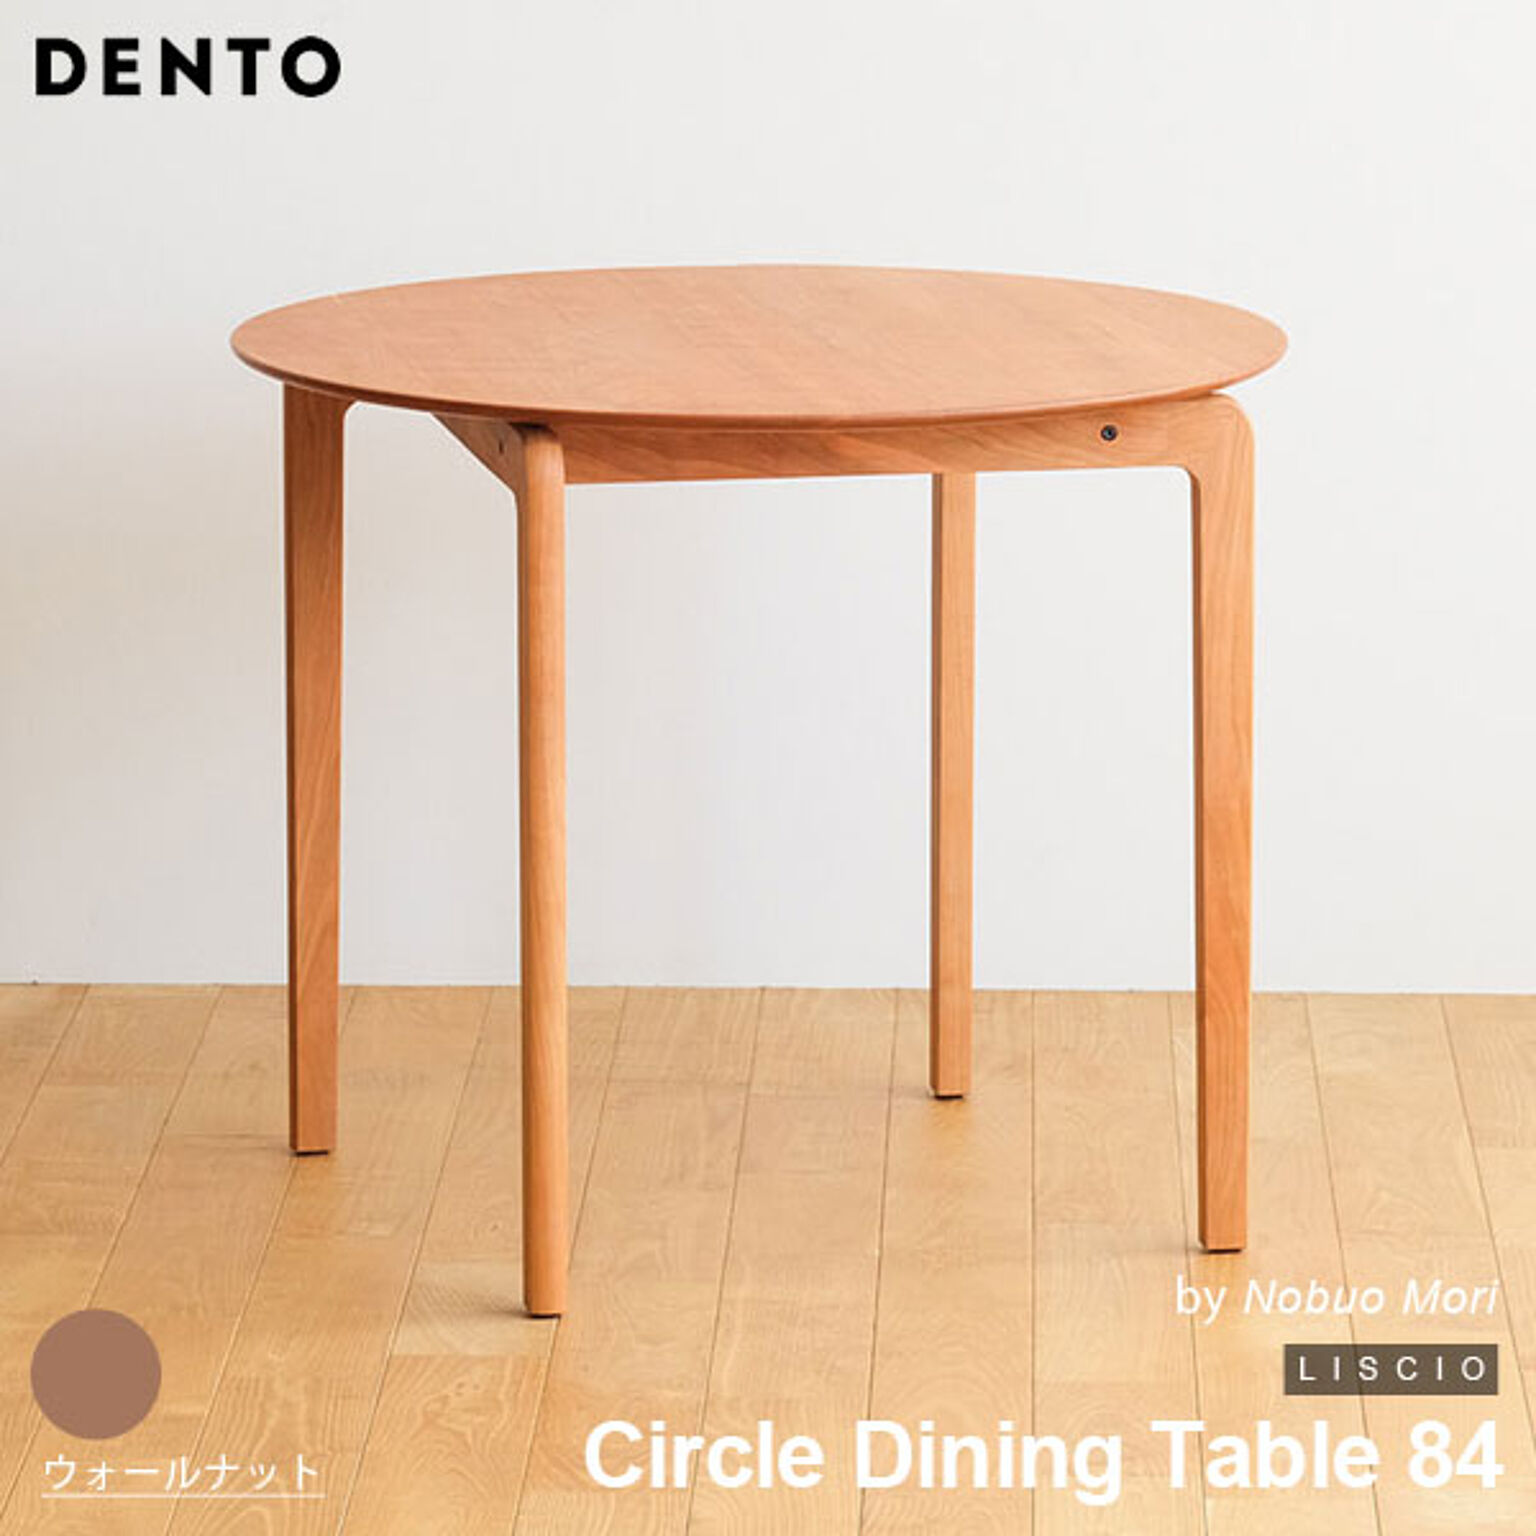 ダイニングテーブル 木製 サークルダイニングテーブル 円形 LISCIO Circle Dining Table 84 リッショ 木製 無垢 スタイリッシュ 北欧 ダイニング 日本製 